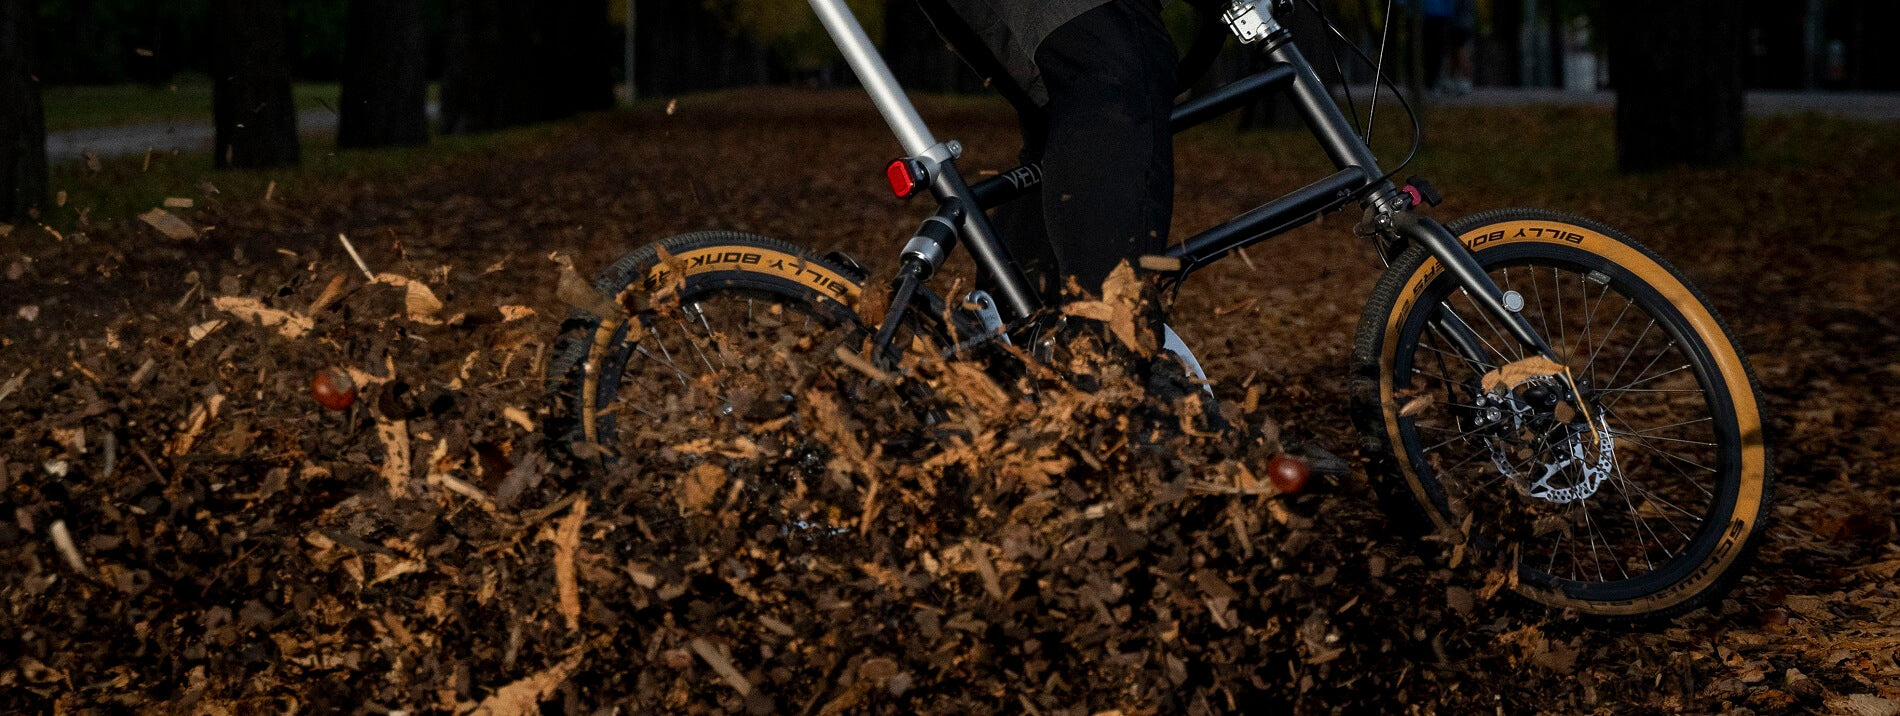 VELLO Gravel | The first folding gravel bike worldwide